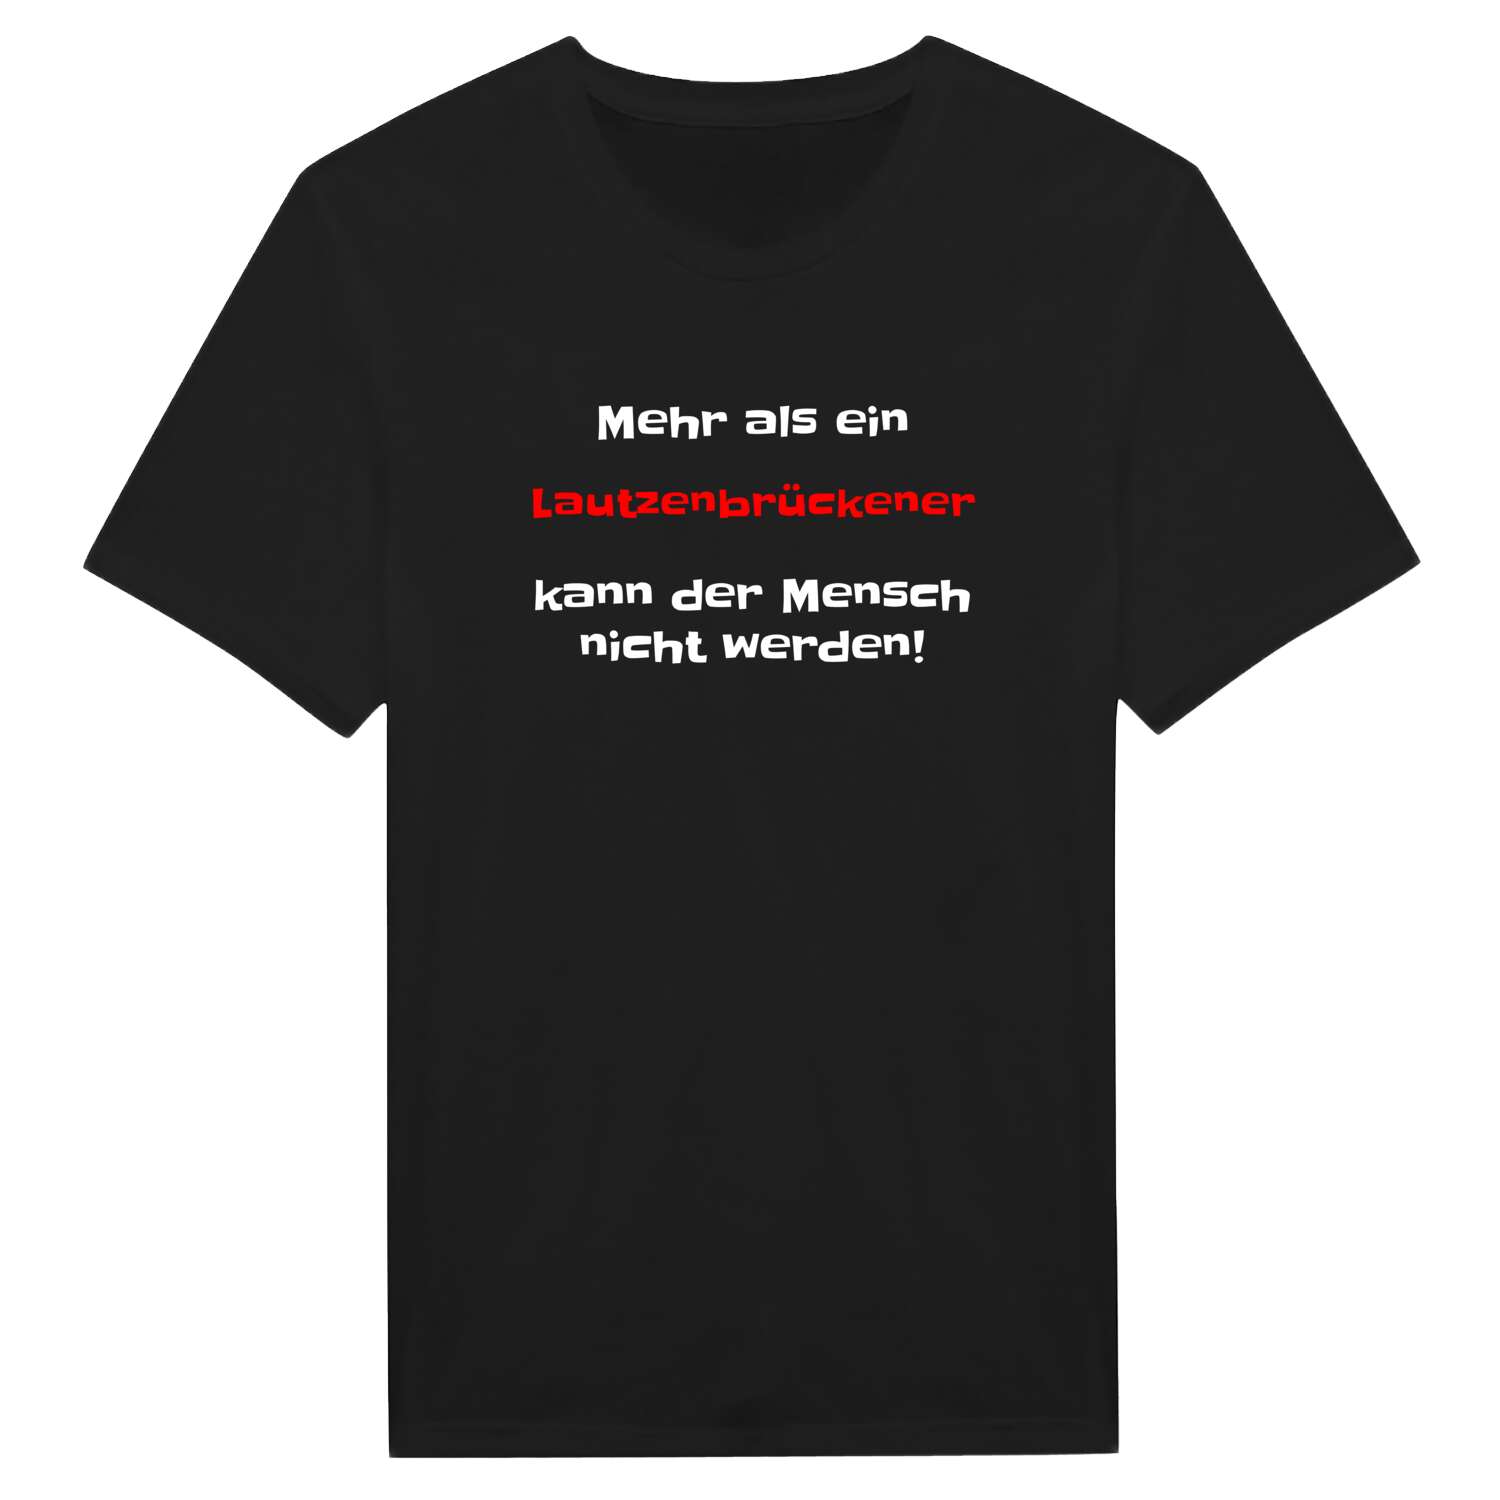 Lautzenbrücken T-Shirt »Mehr als ein«